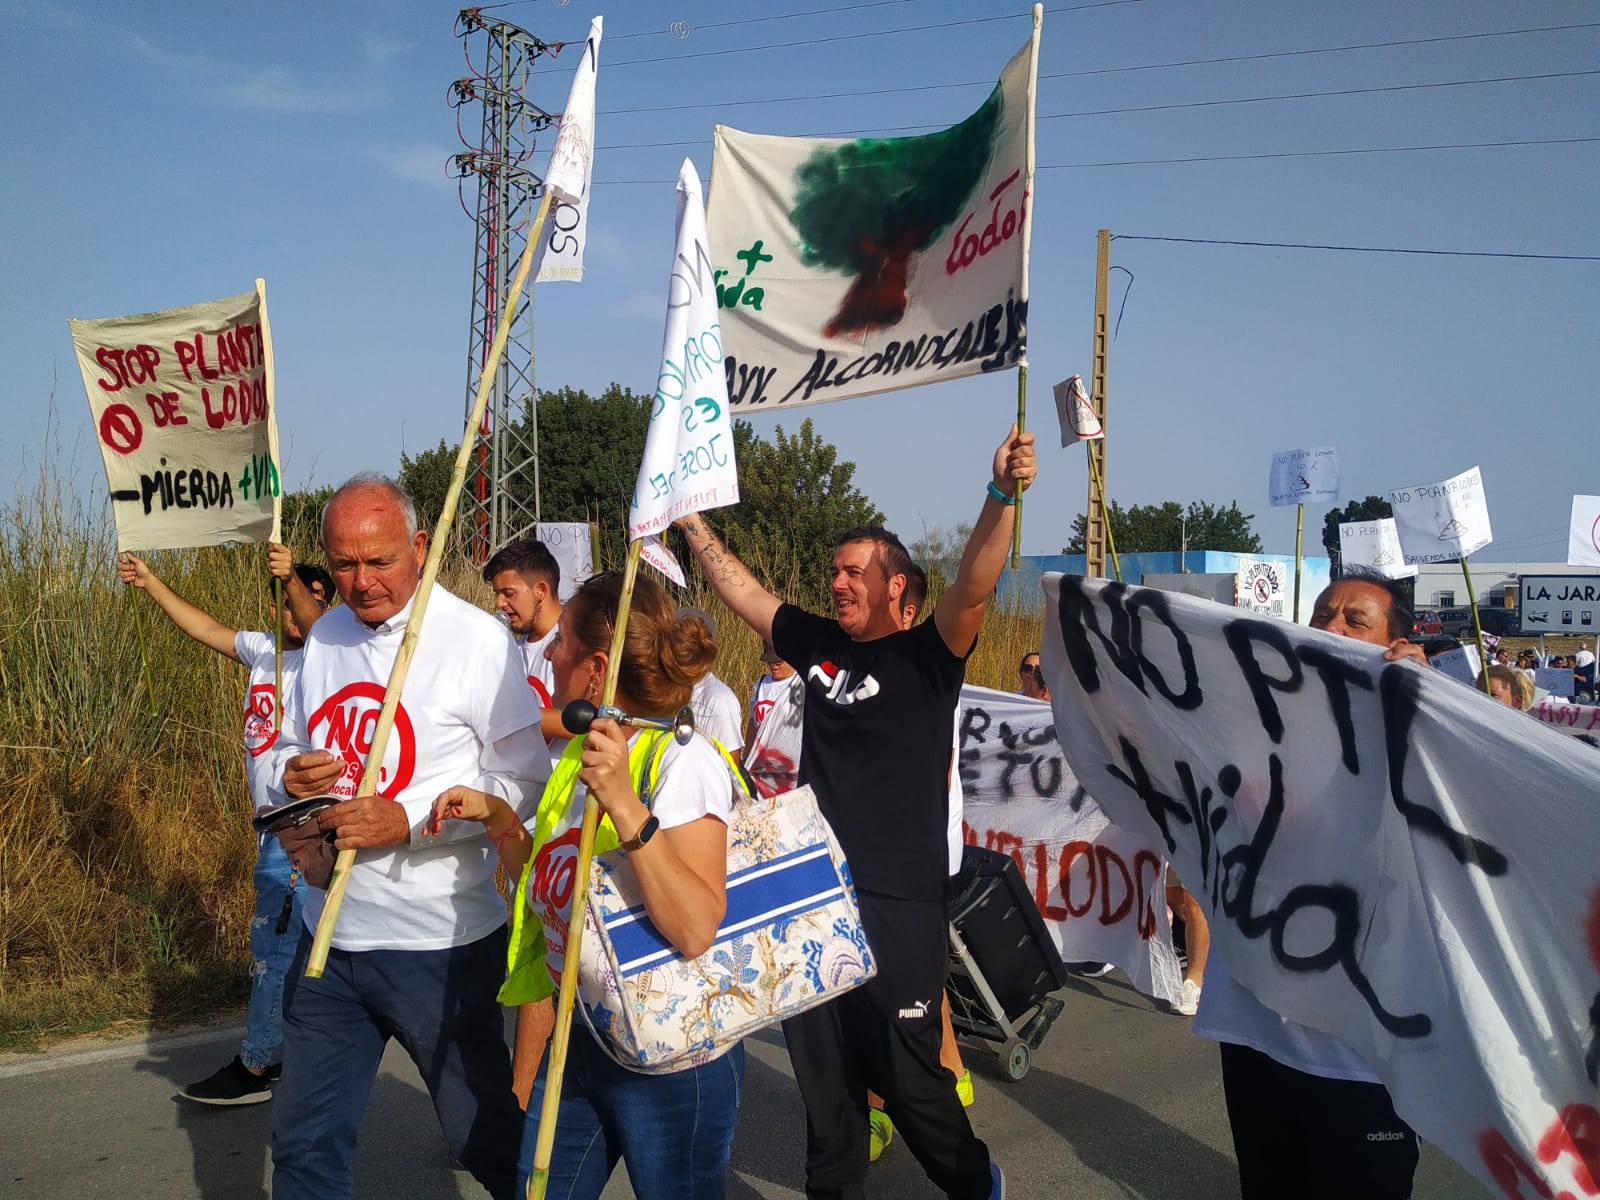 En la manifestación participó el ecopacifista Paco Casero, PLATAFORMA NO  LODOS